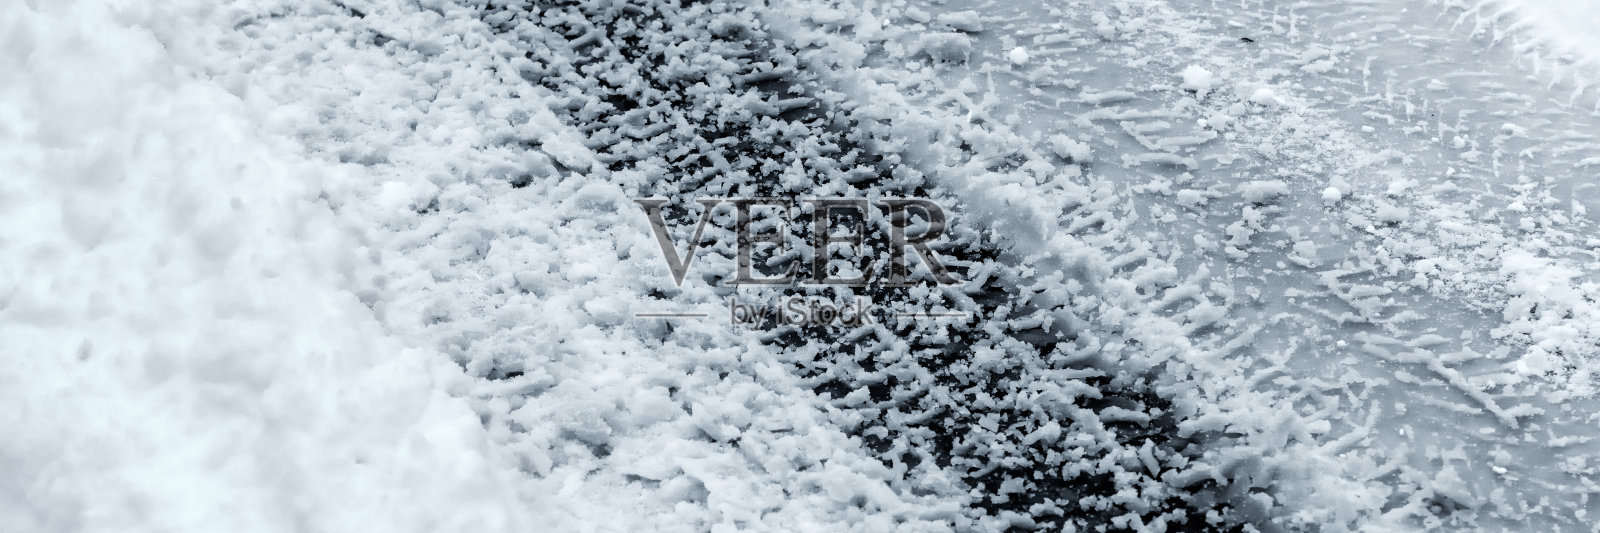 冬季驾驶背景:雪地上有轮胎印照片摄影图片